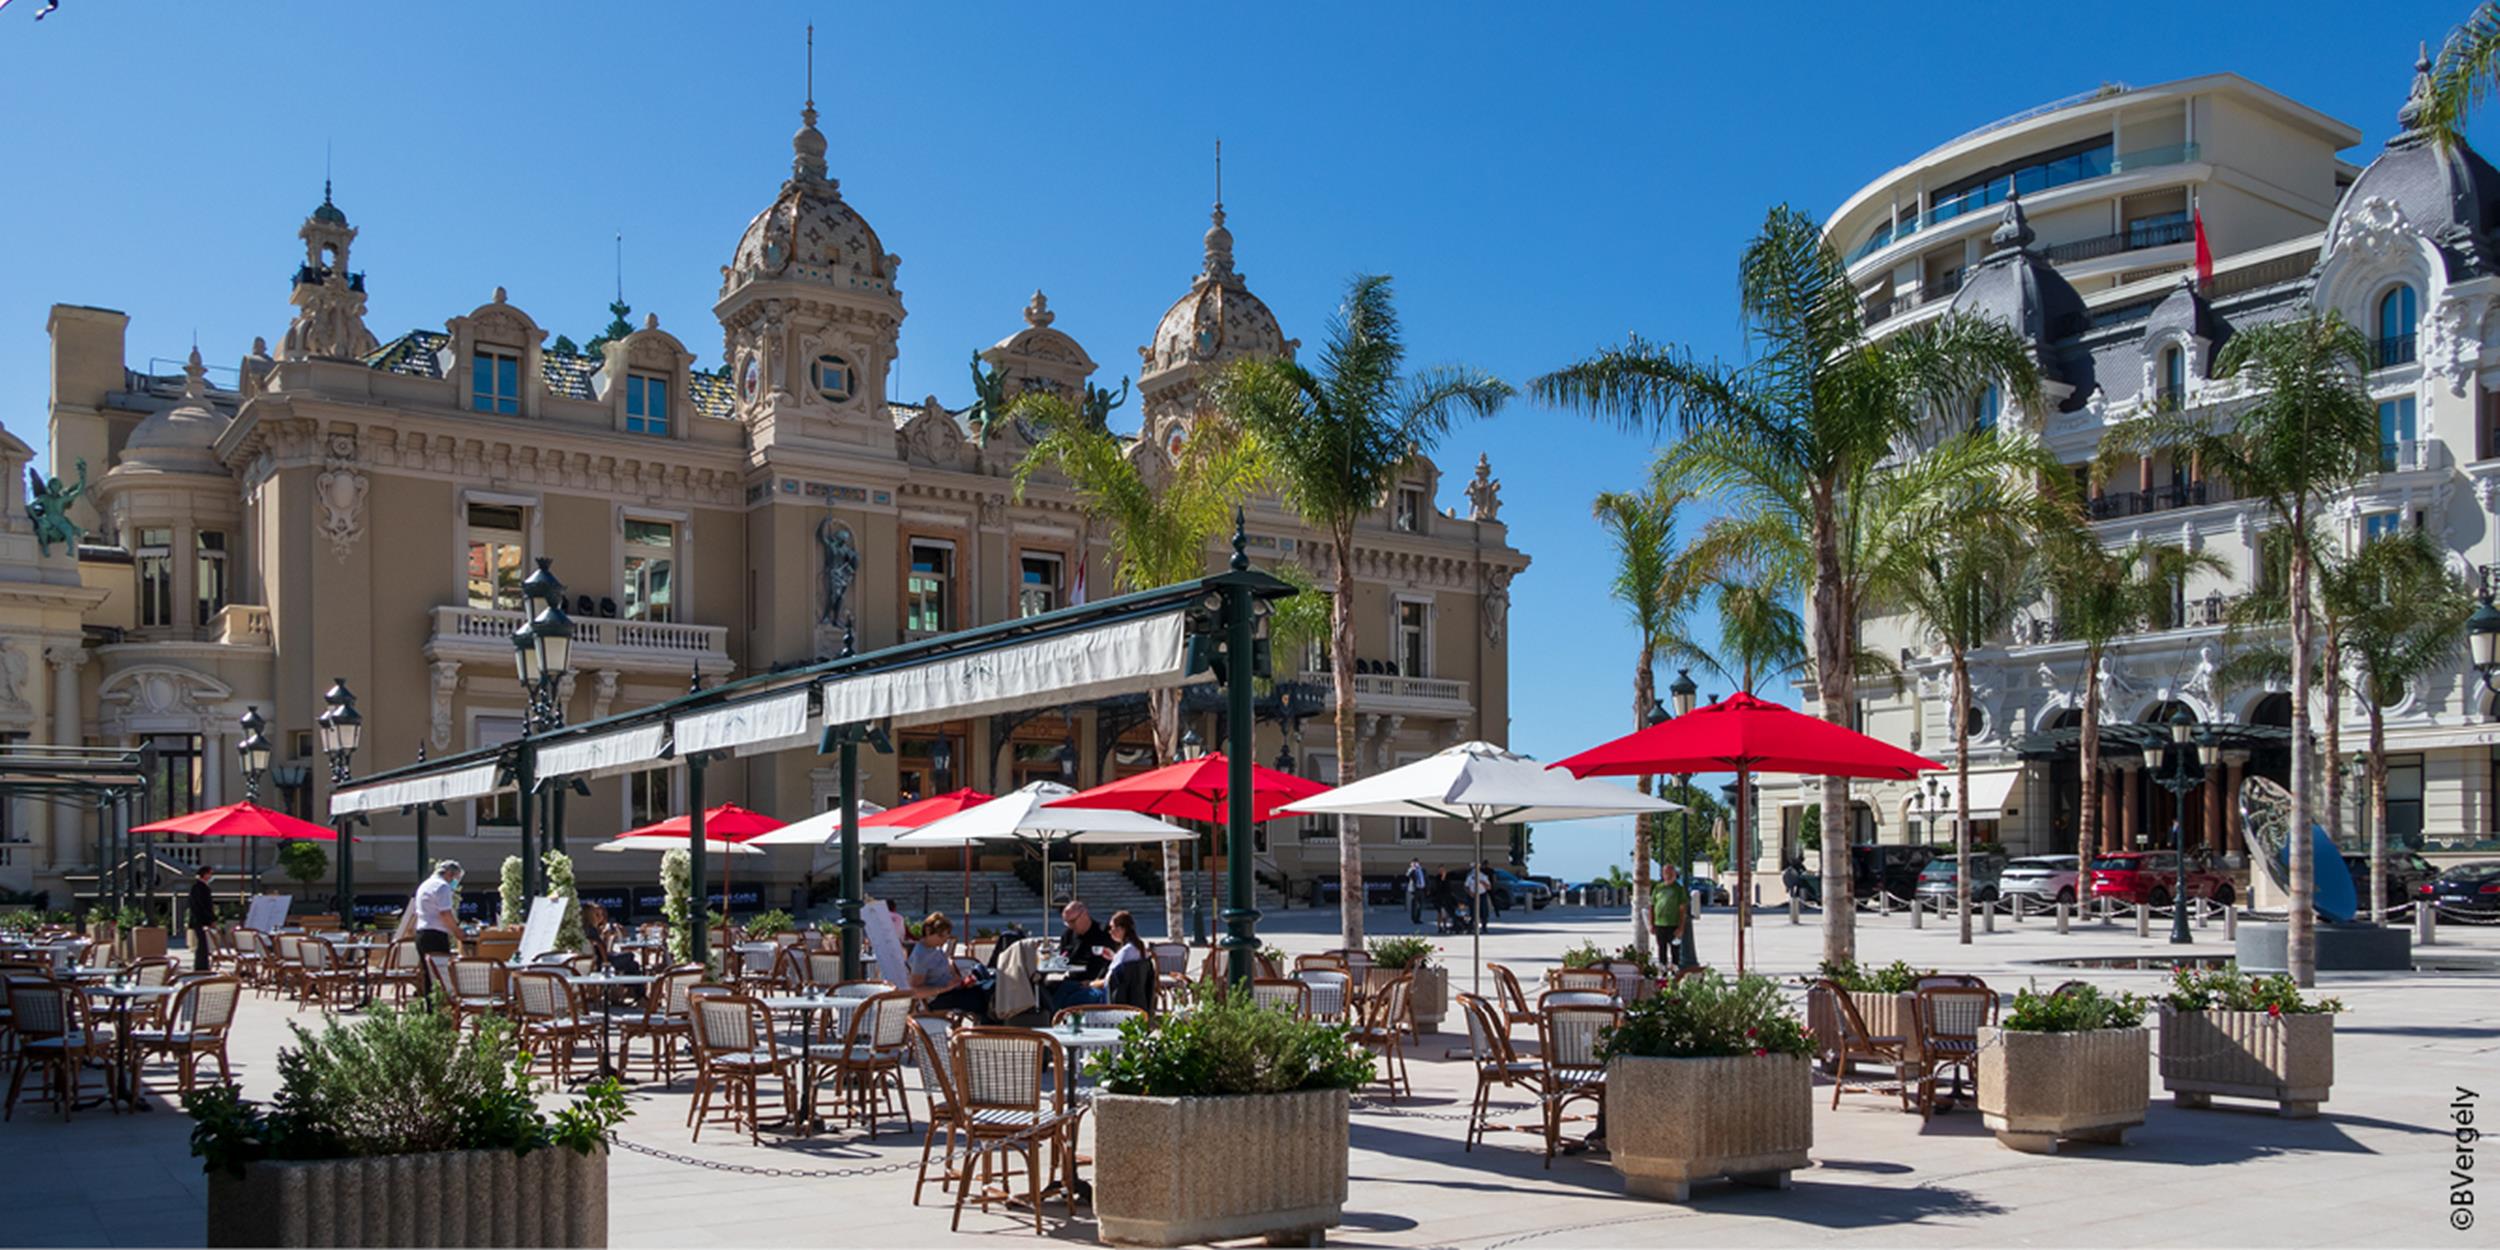 Monte Carlo and its Casino